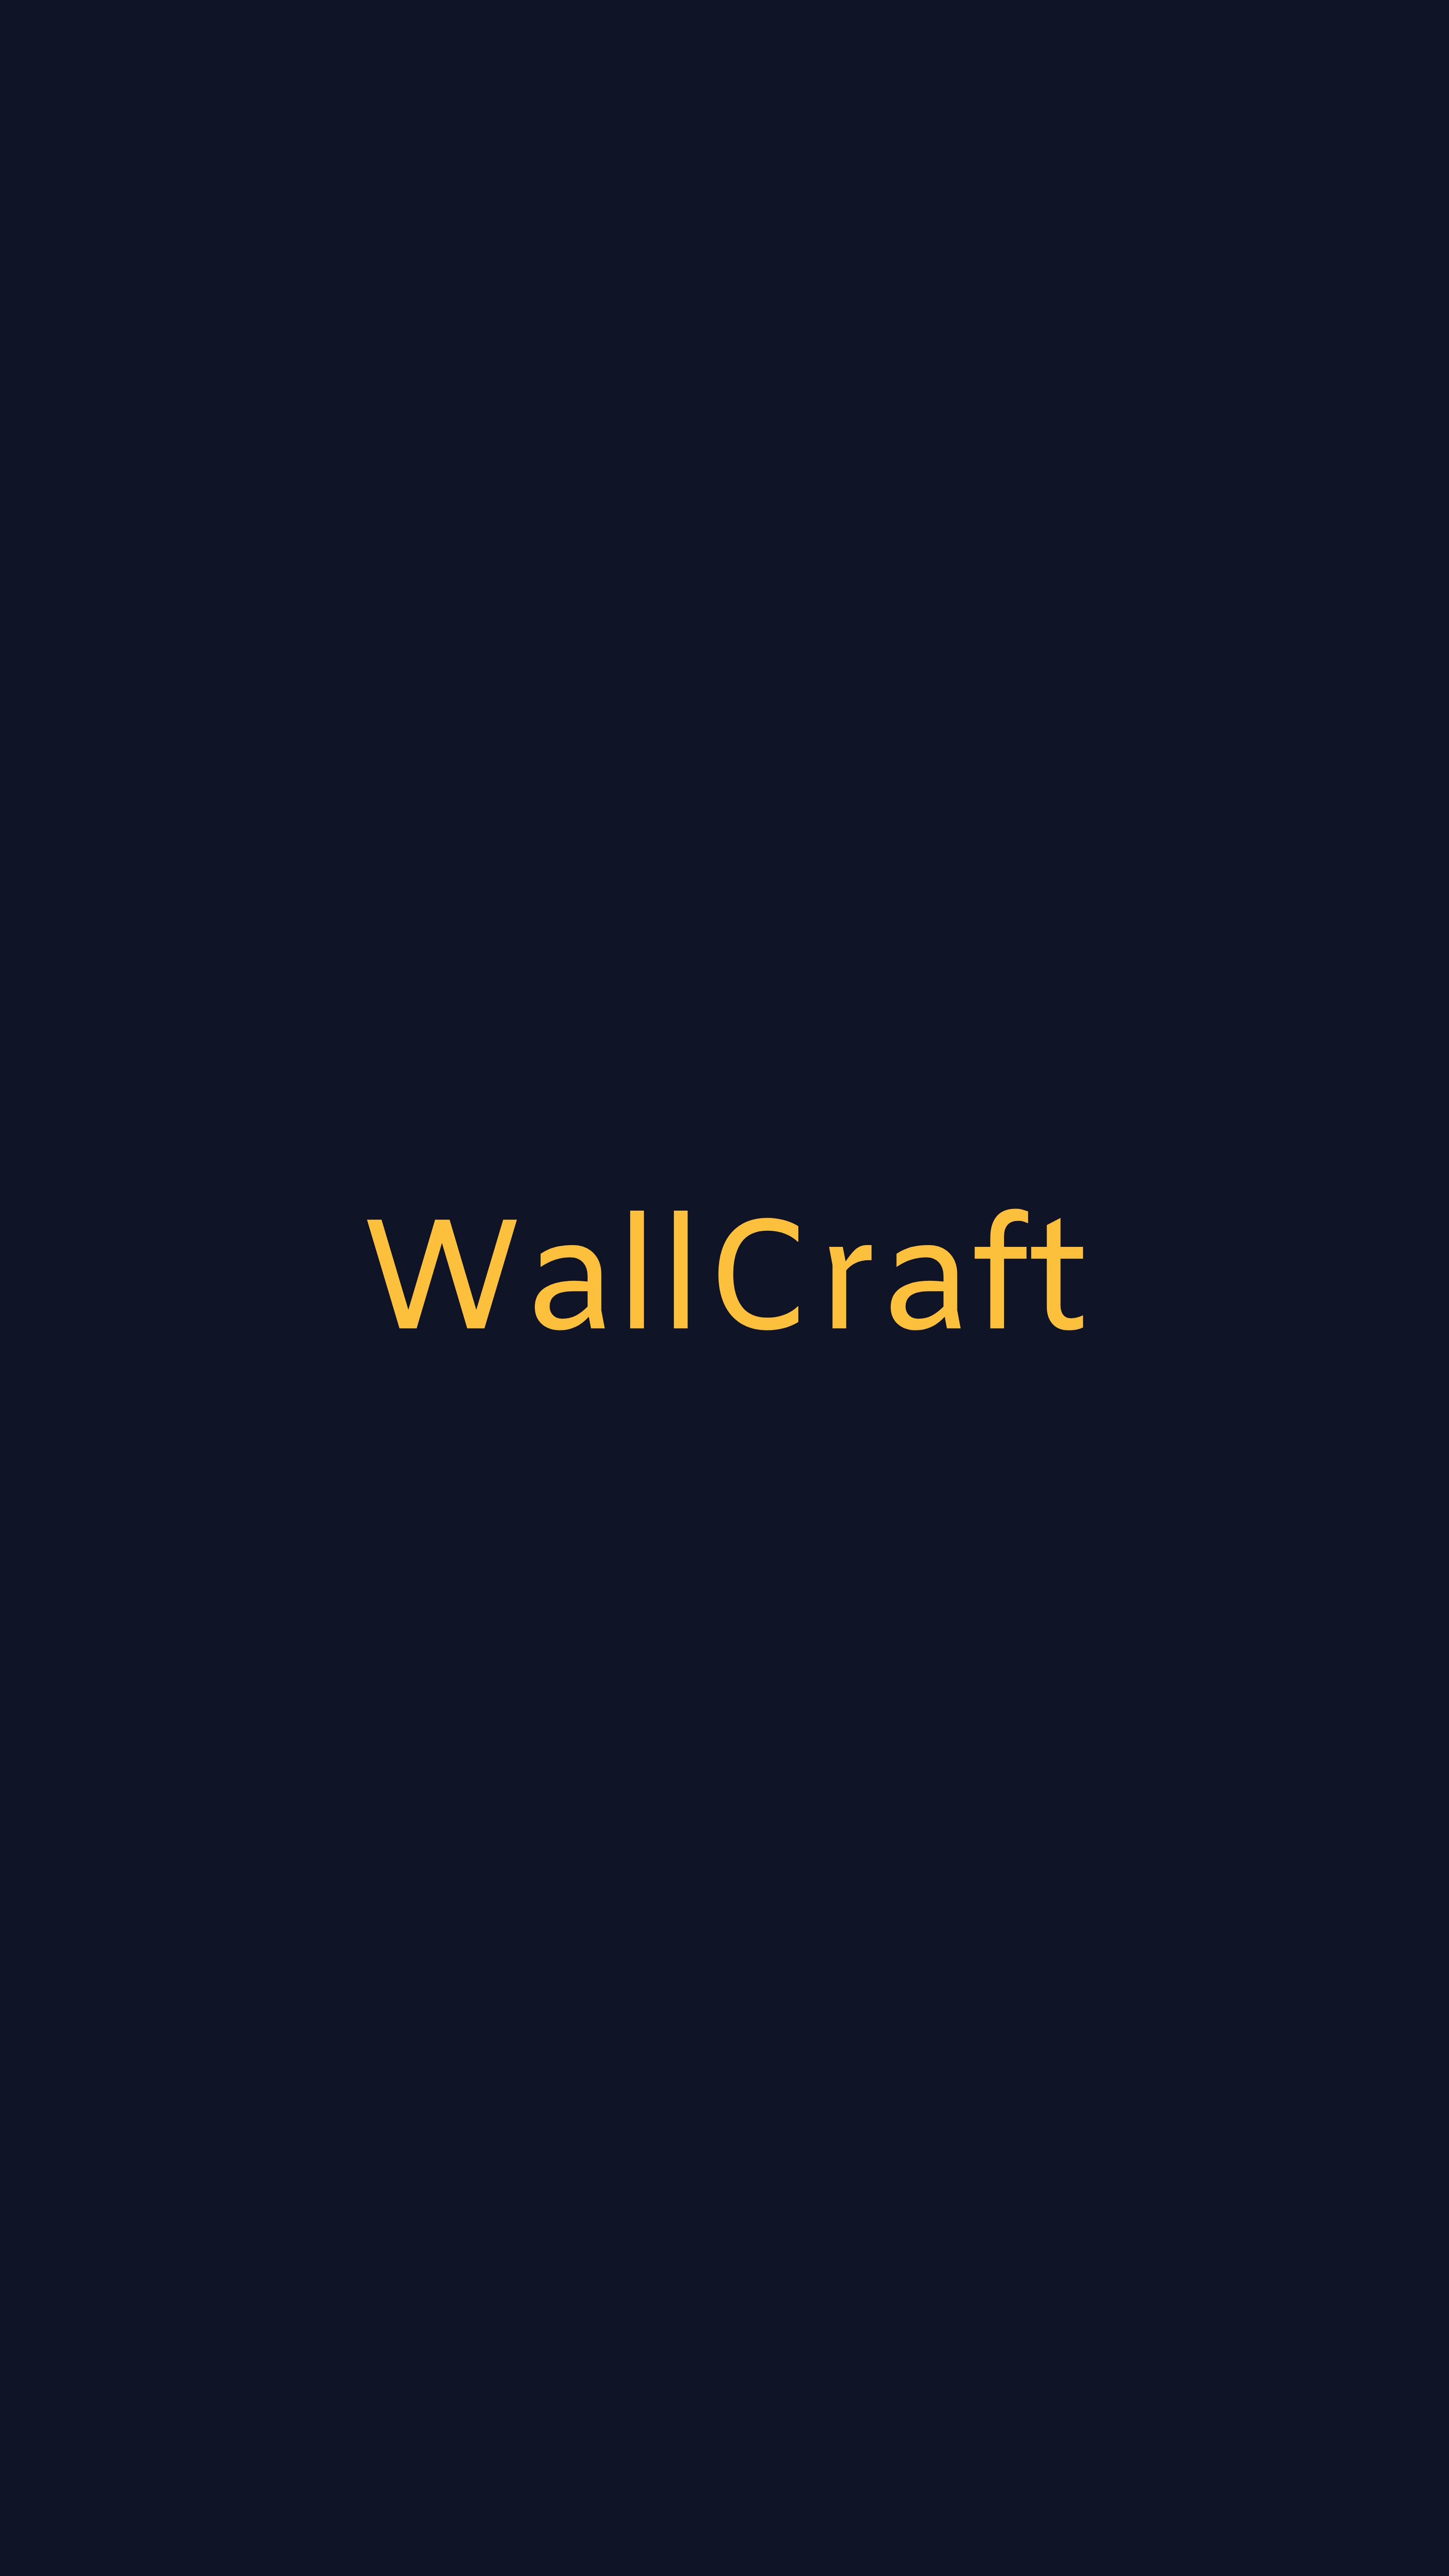 Популярные заставки и фоны Wallcraft на компьютер